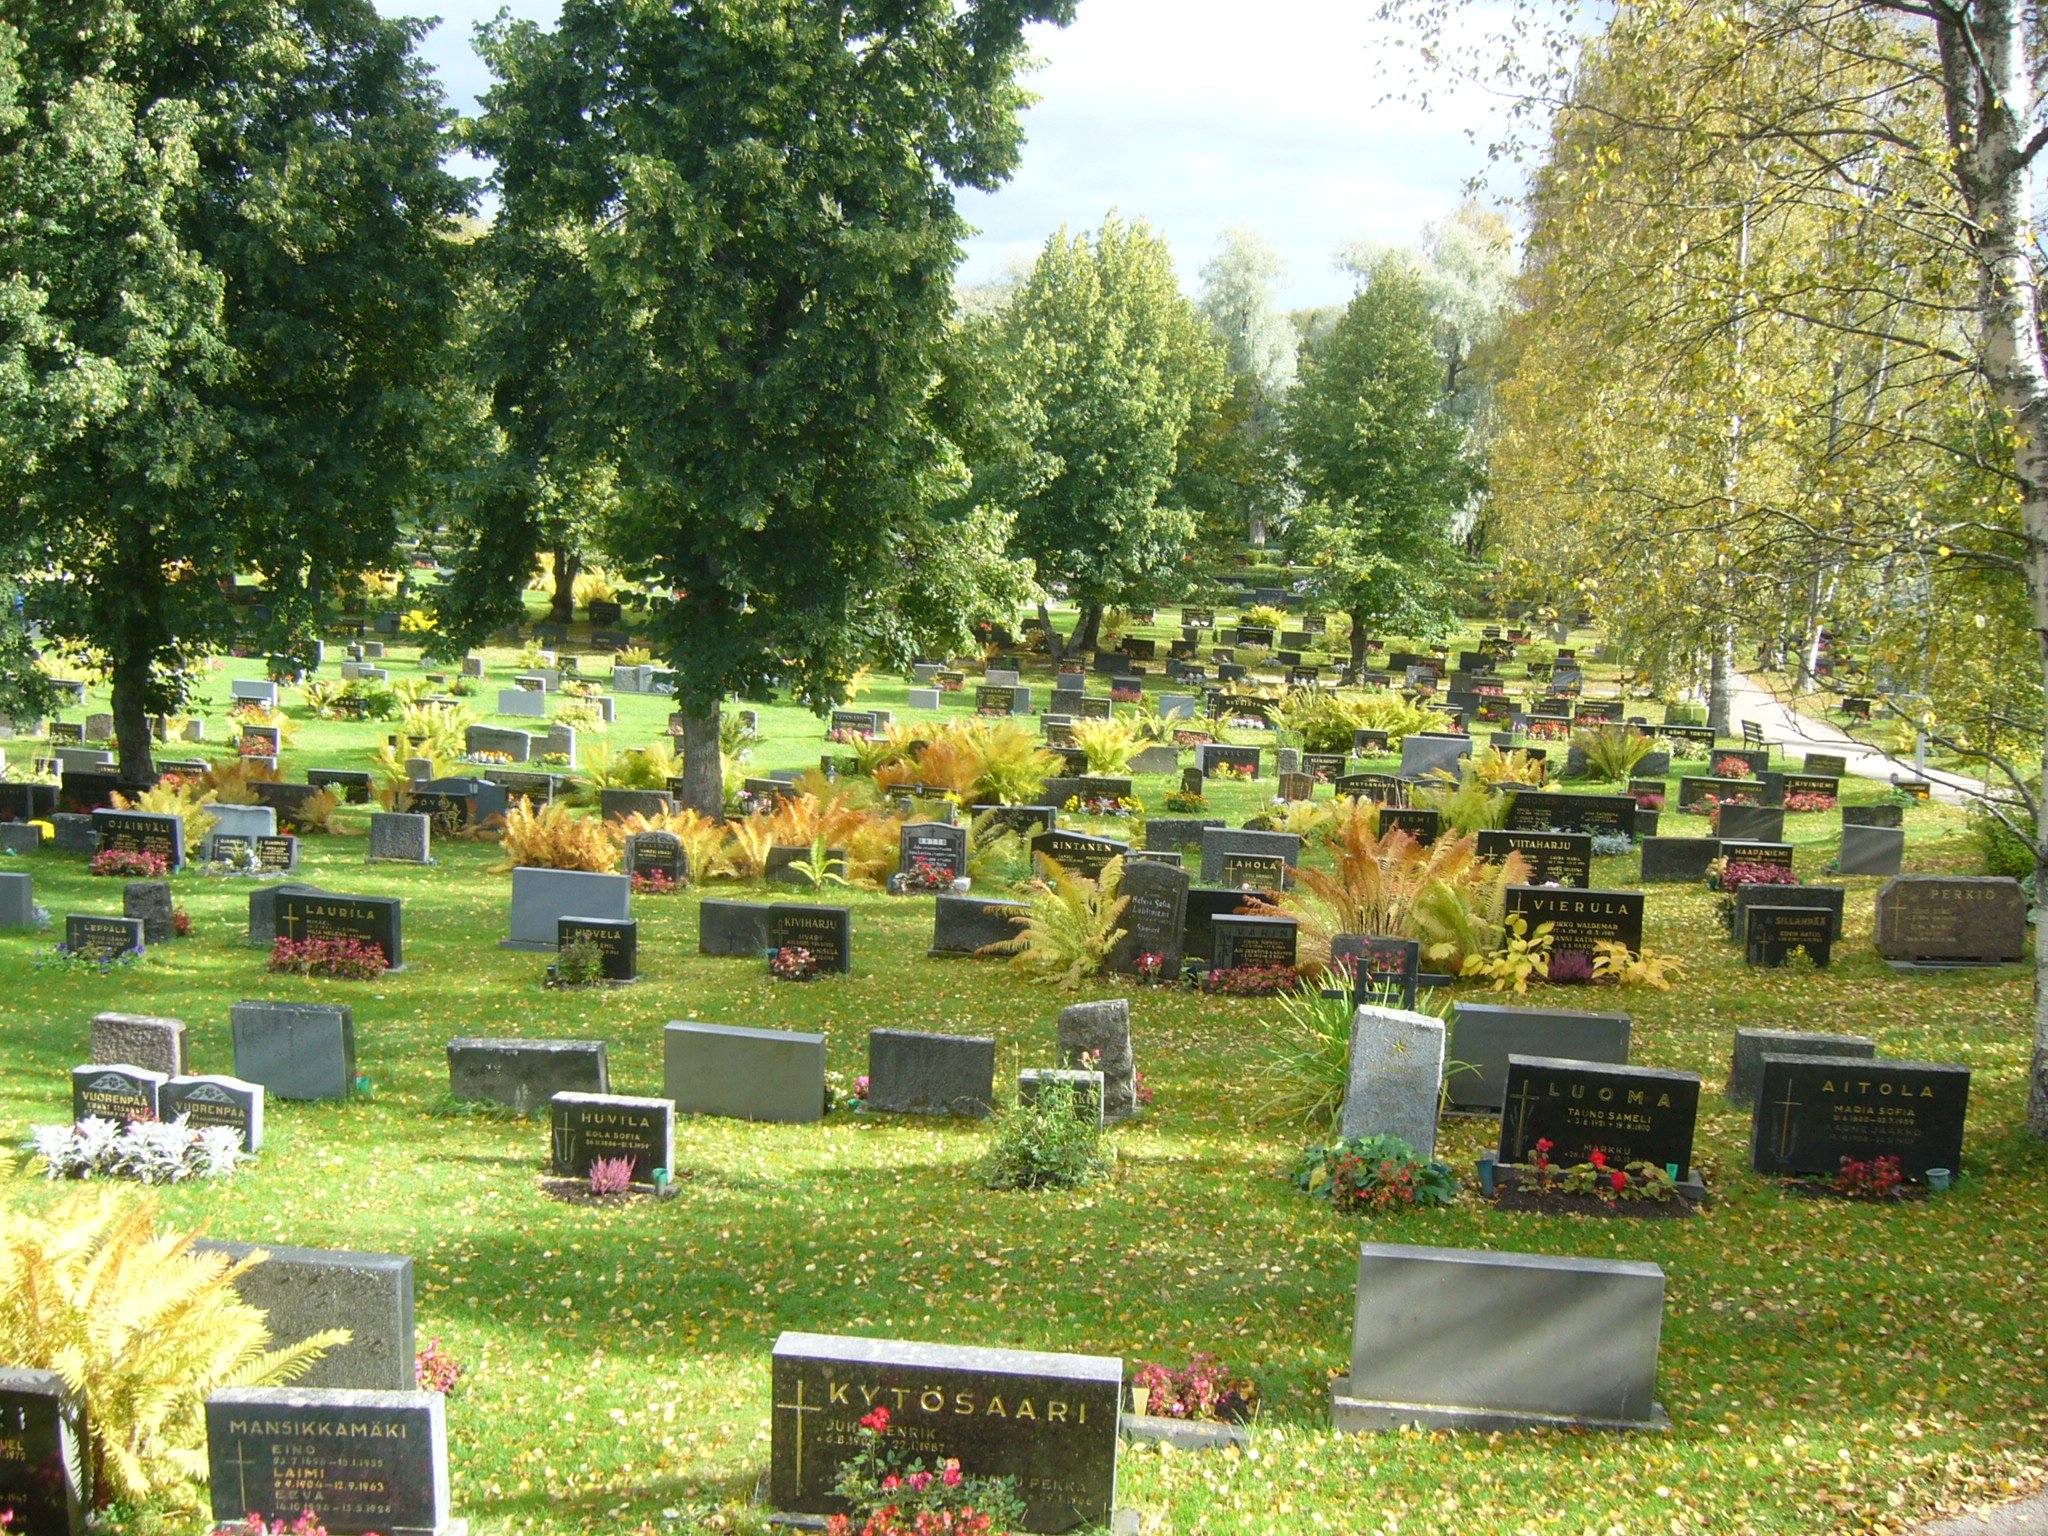 File:Kurikka cemetery, Finland.jpg - Wikimedia Commons